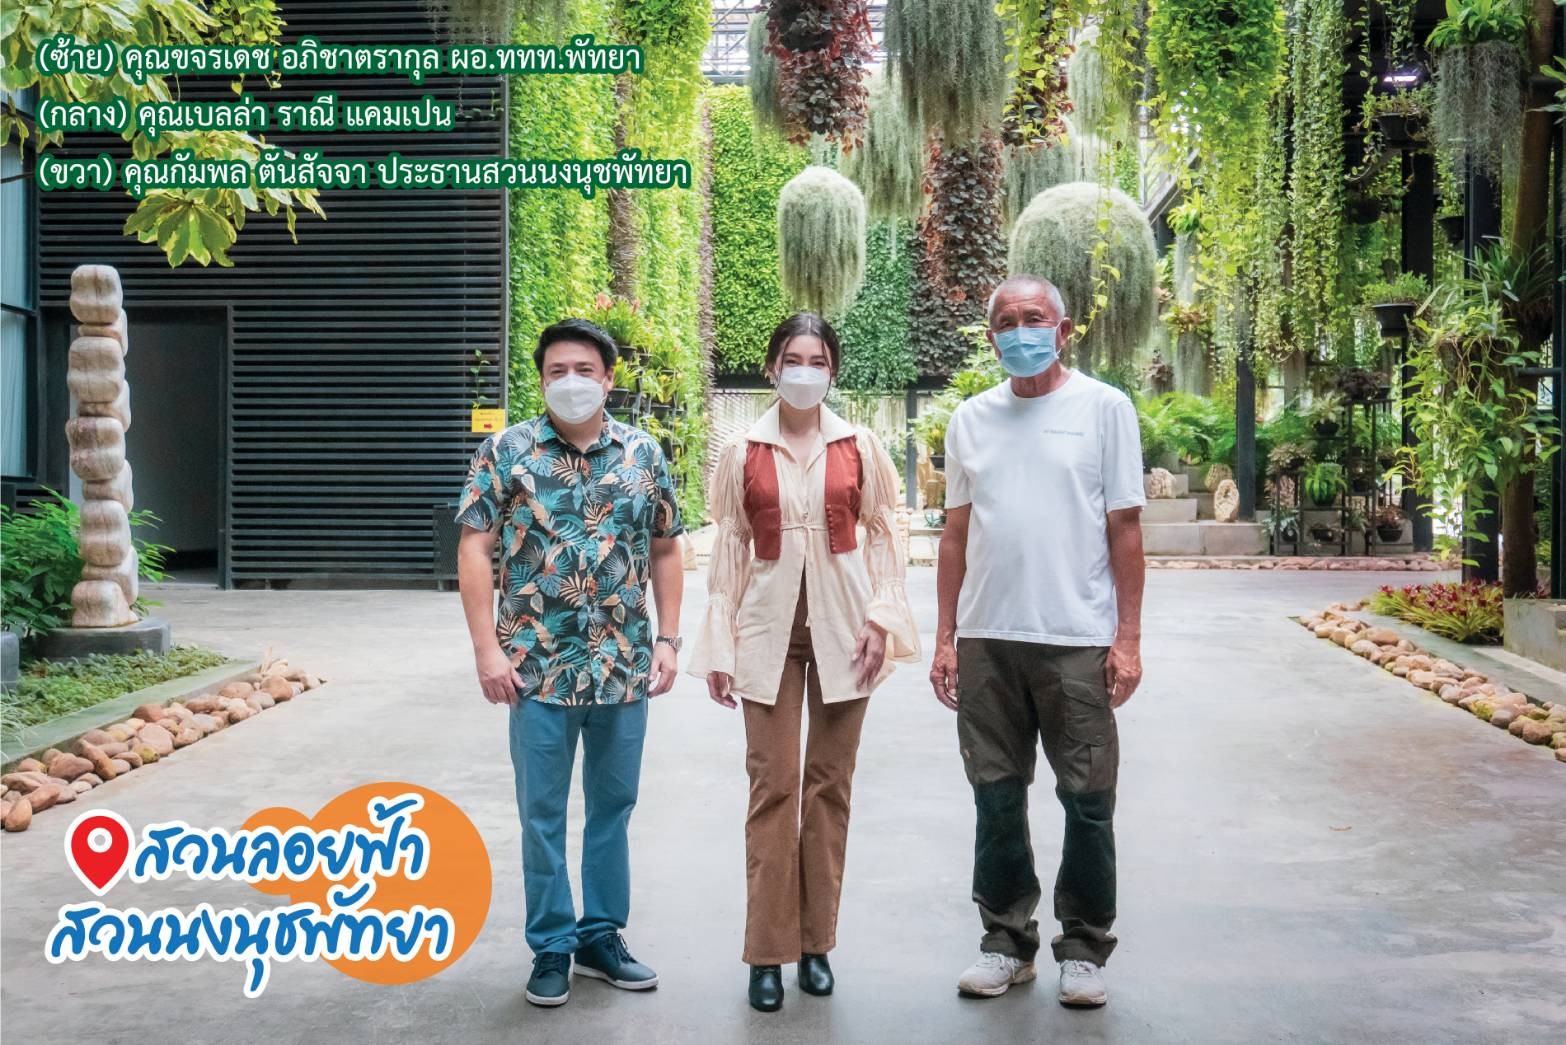 ขอขอบคุณการท่องเที่ยวแห่งประเทศไทย กับแหล่งท่องเที่ยว Unseen New series หุบเขาไดโนเสาร์ สวนนงนุช พัทยา จ.ชลบุรี